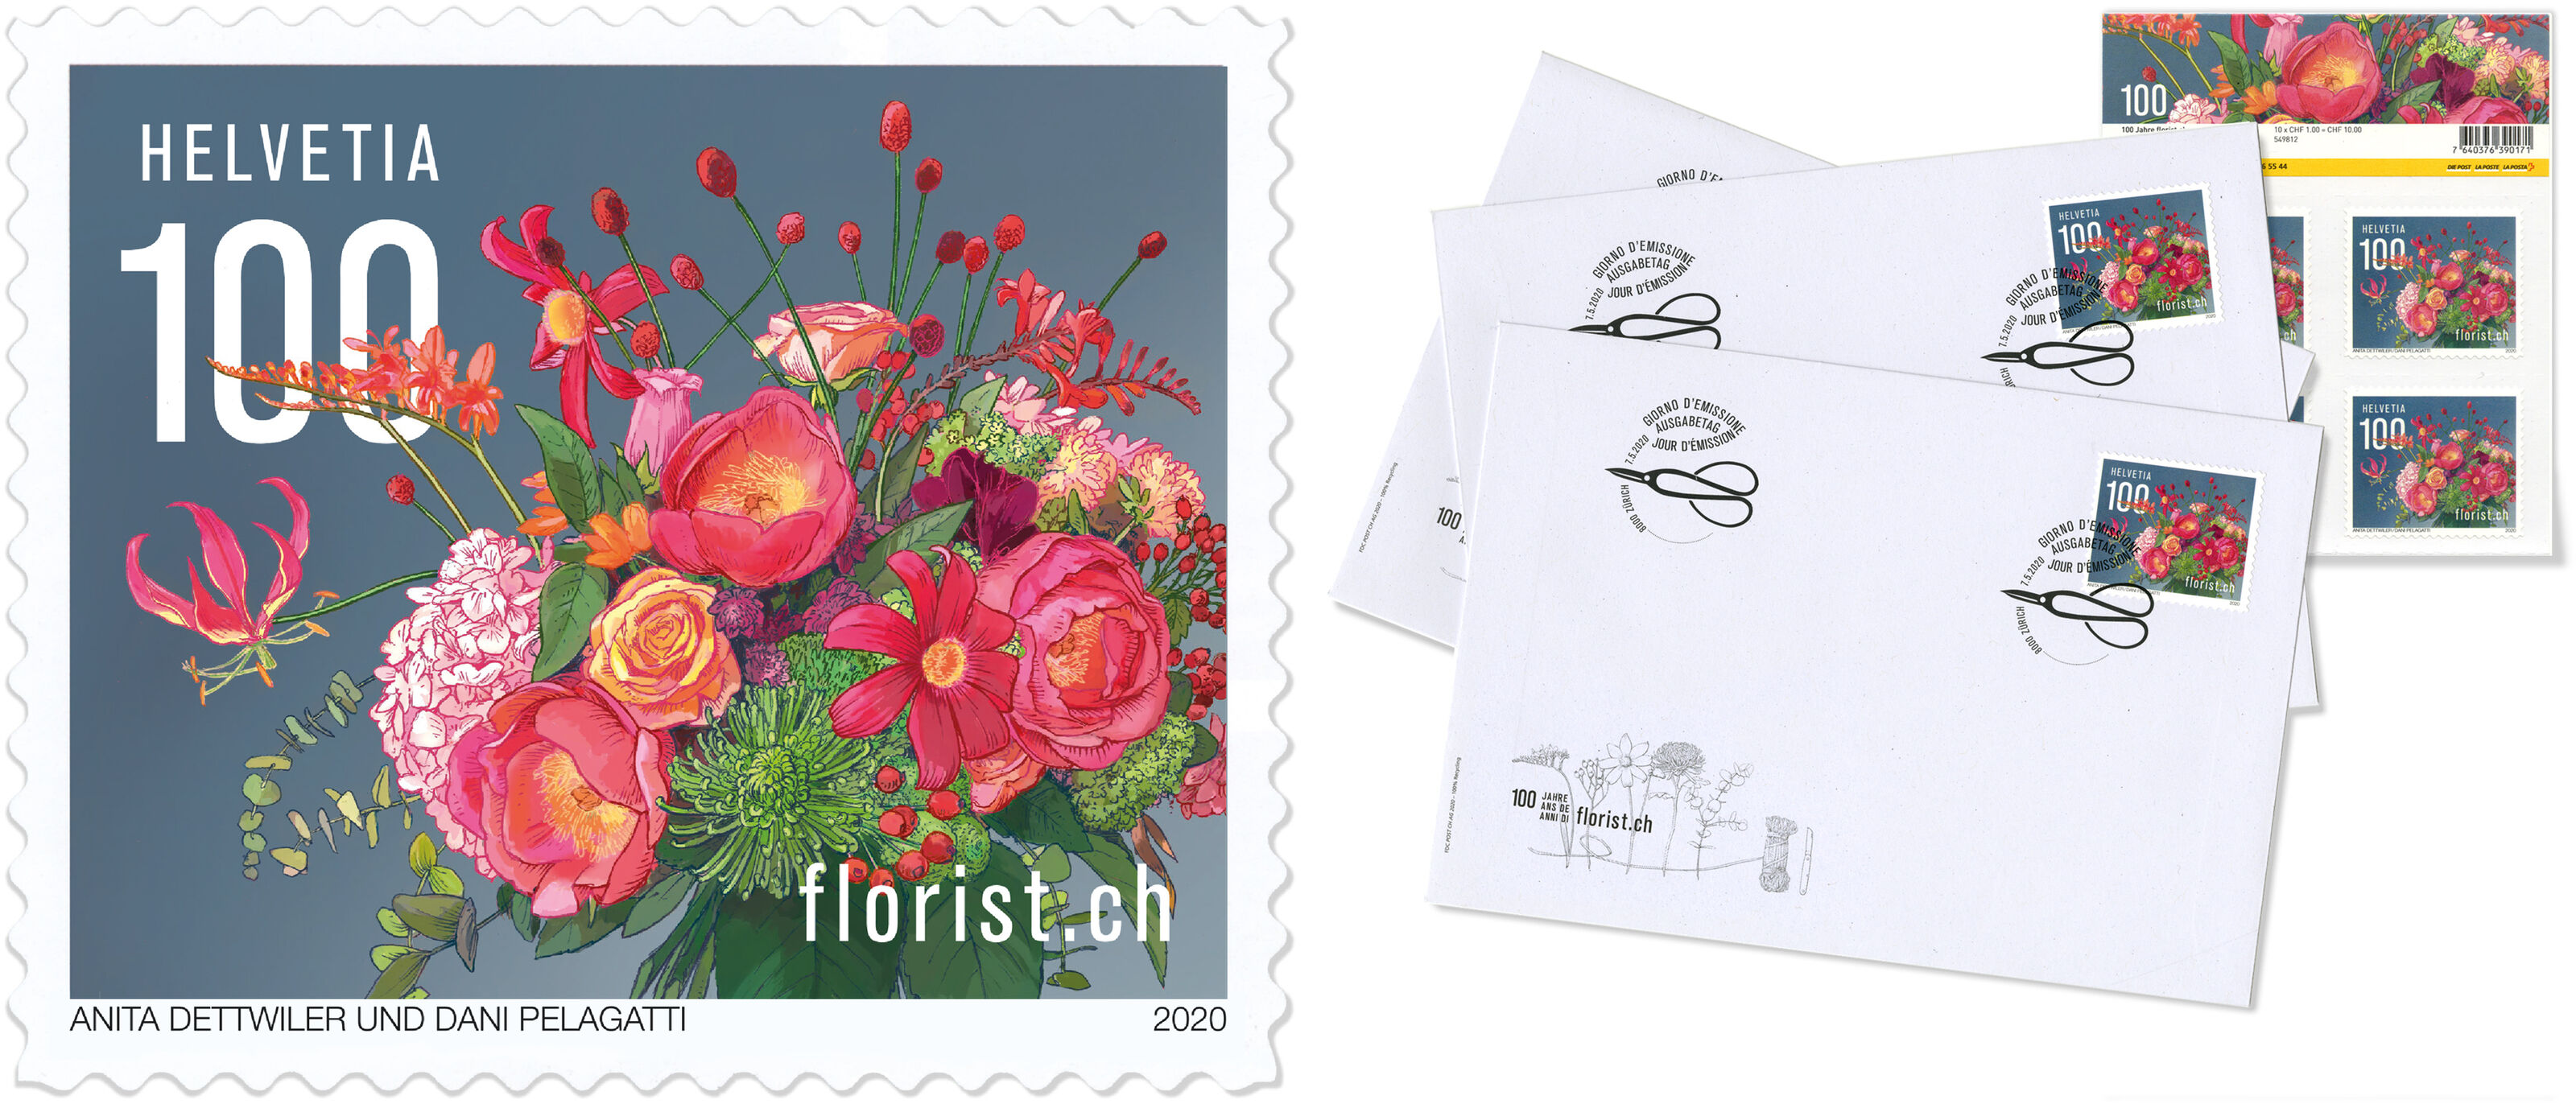 Post-Sondermarke-3_Blumenstrauss_100J-Floristch_Blumenstrauss_bunterhund-Ilustration